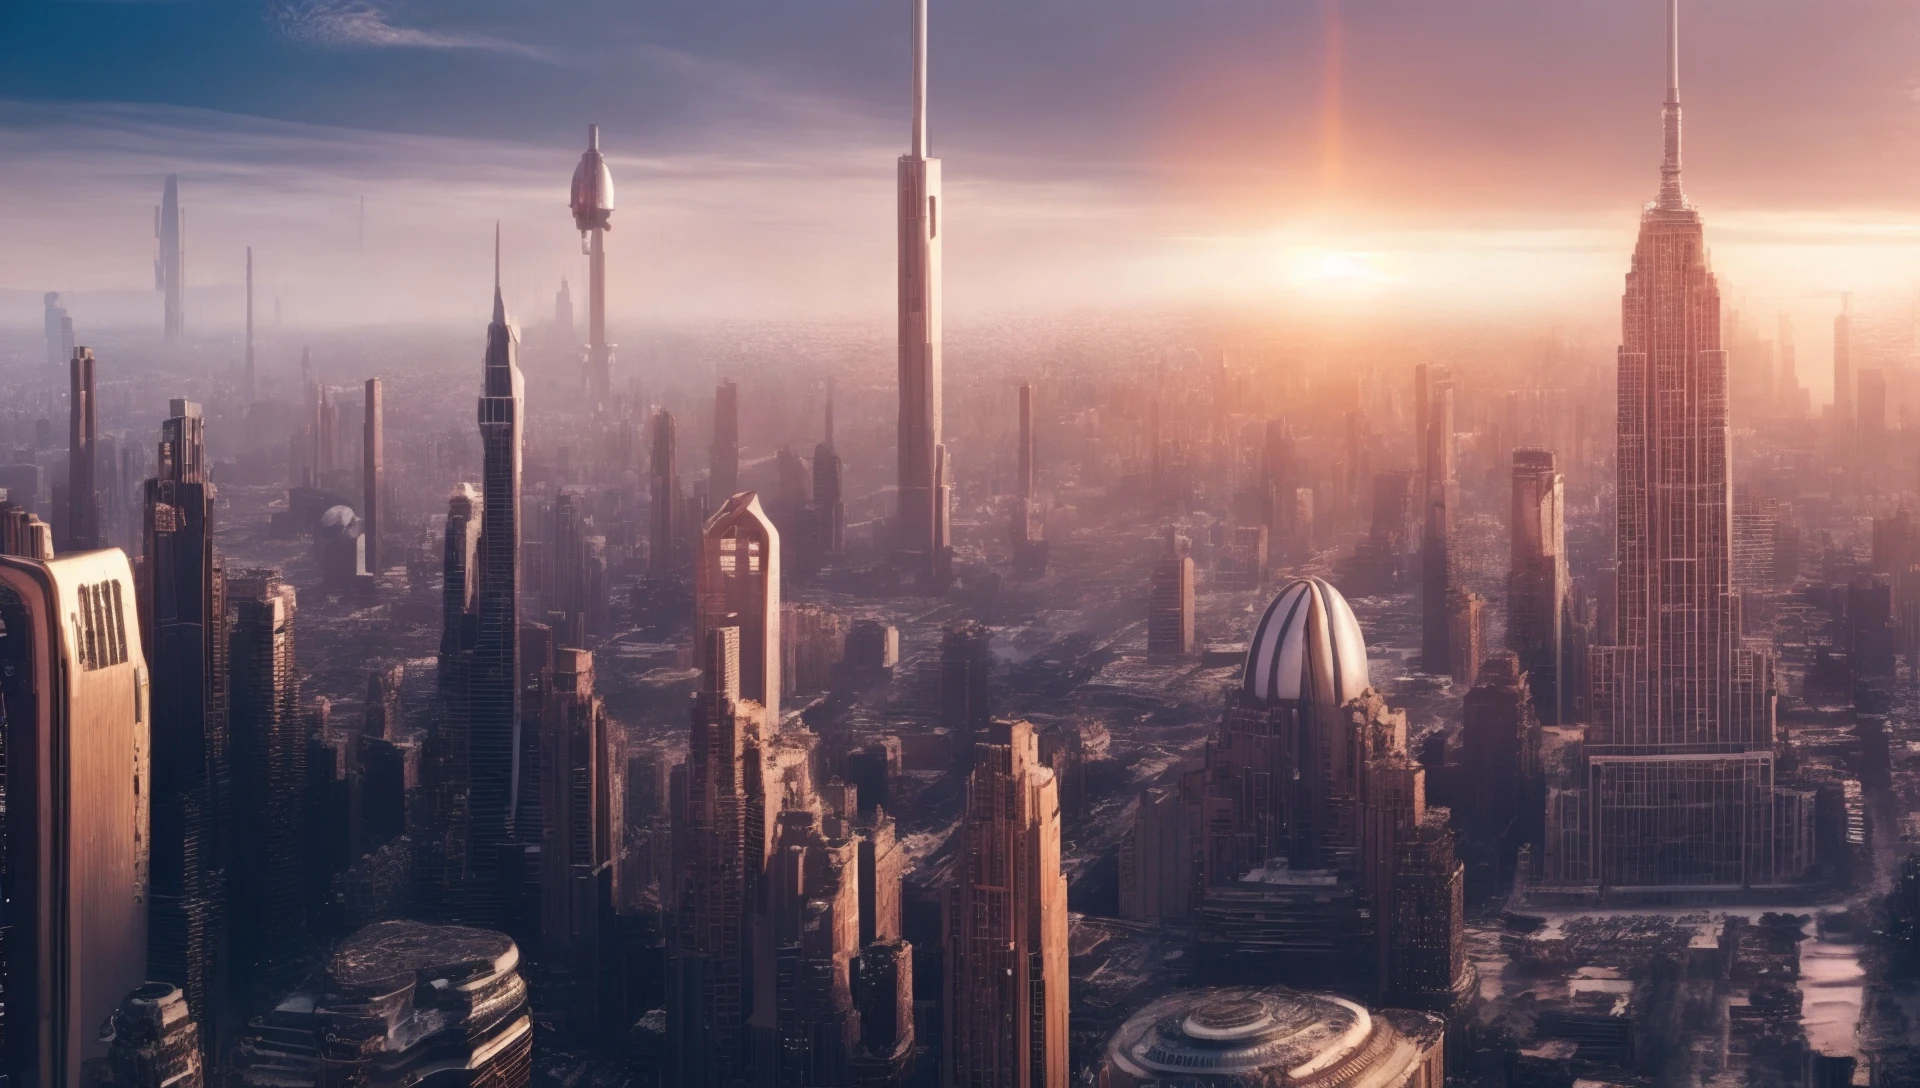 2 张科幻未来城市景观照片, 第三类接触